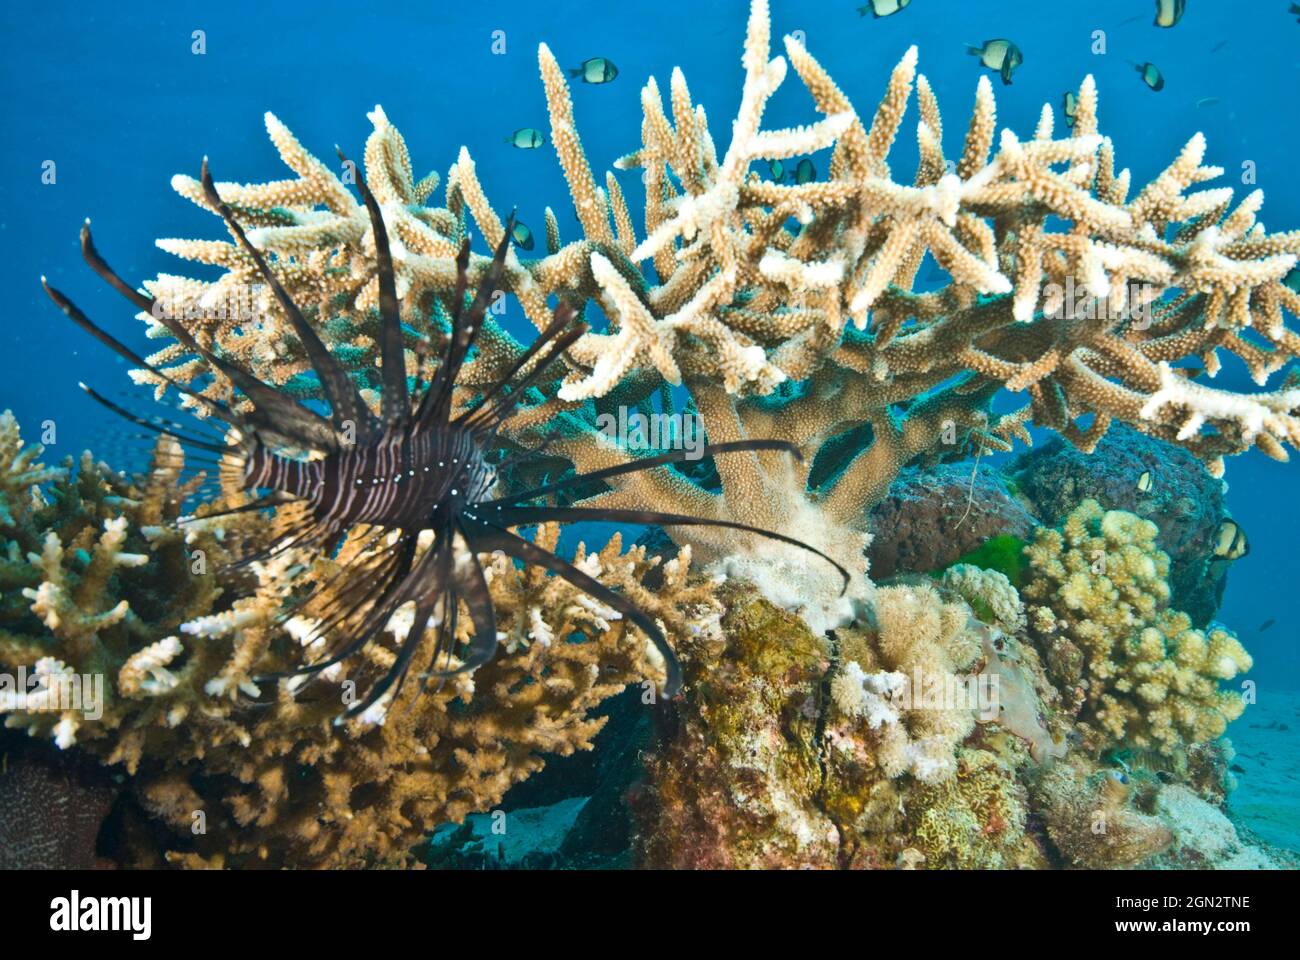 Rotlionfisch (Pterois volitans), der eine Ausbisse von harten Korallen nach kleinen Beutetieren vermessen hat. Port Douglas, North Queensland, Australien Stockfoto